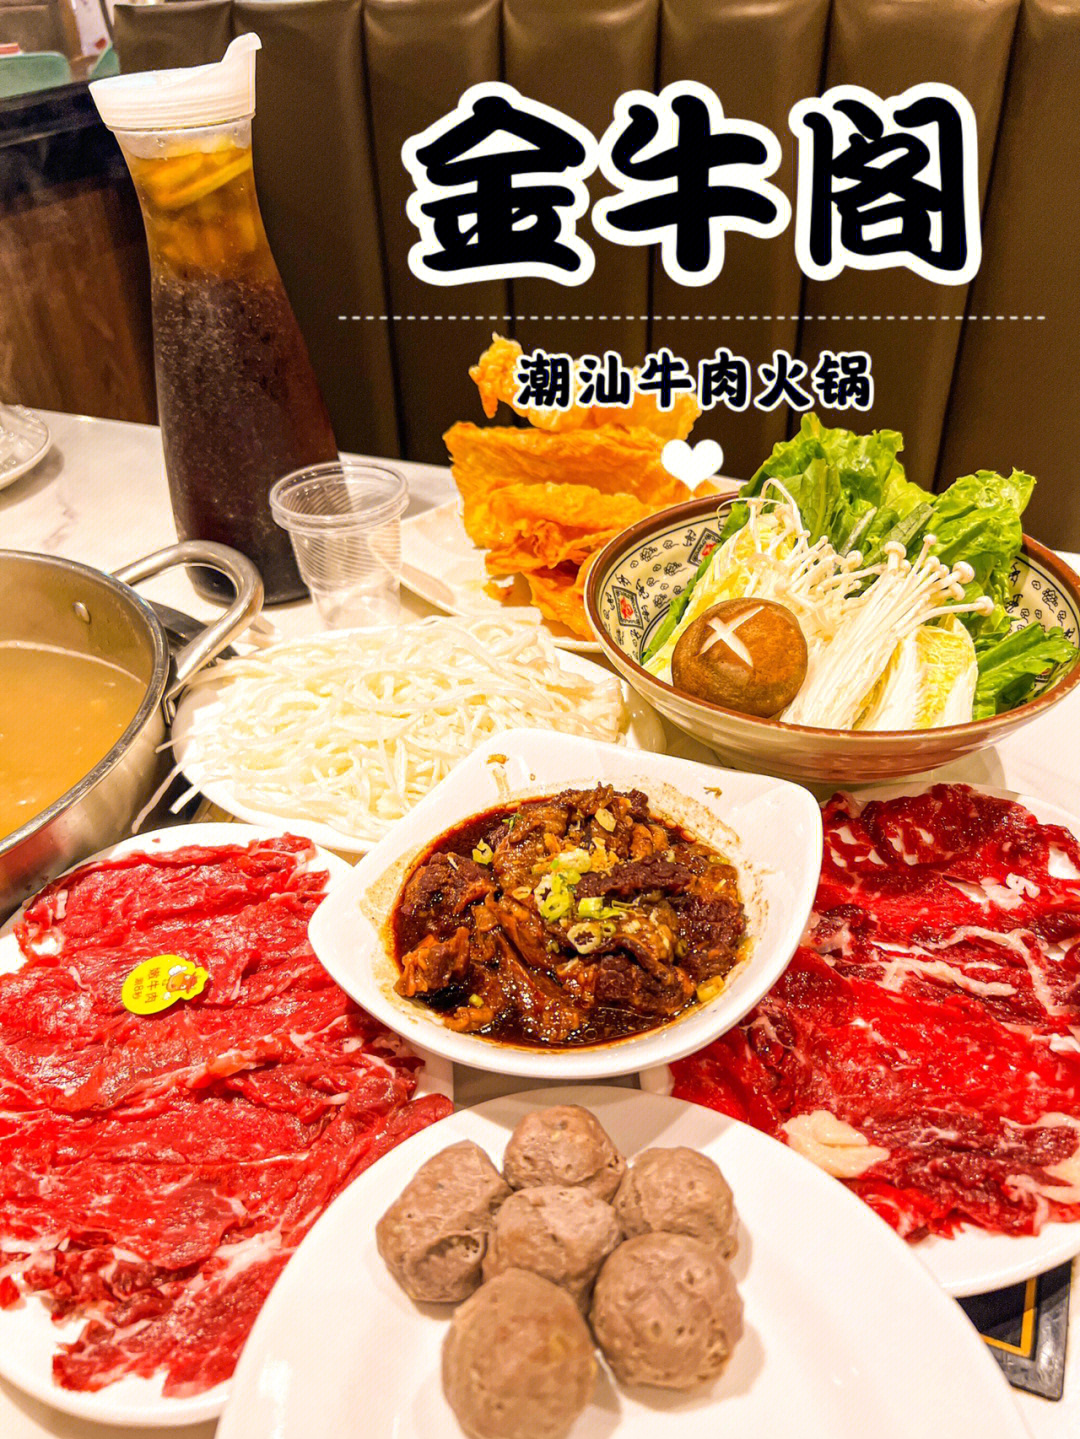 潮州吃的09牛肉火锅有得一拼6015锅底采用牛骨熬制加上白萝卜和